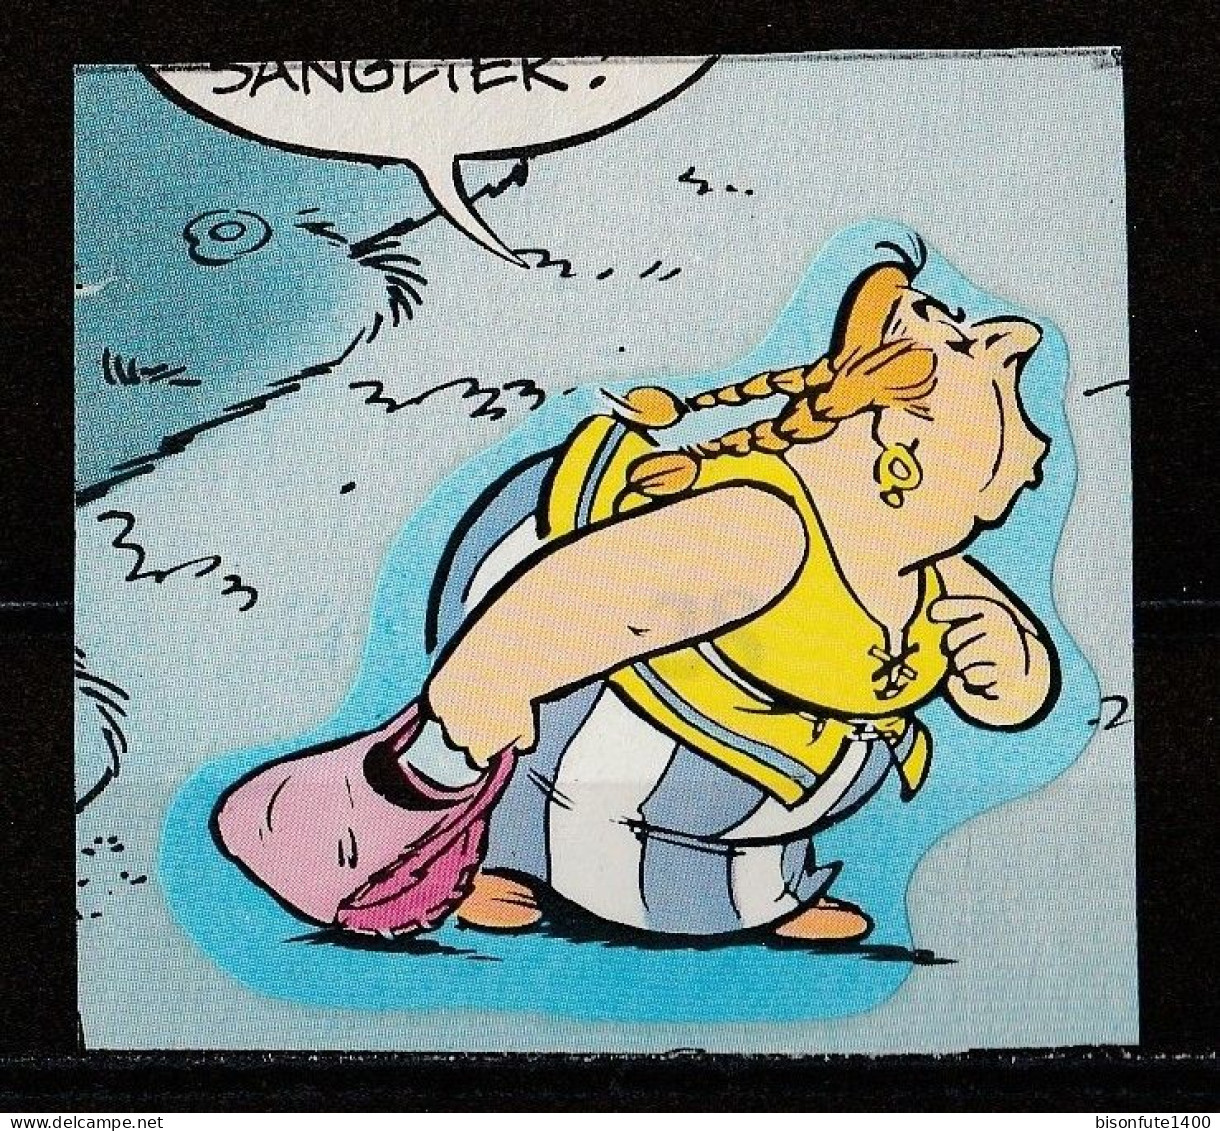 ASTERIX : Occasion : Vignette Autocollante N° 28 De L'album PANINI "Astérix" De 1987. ( Voir Description ) - Edizione Francese